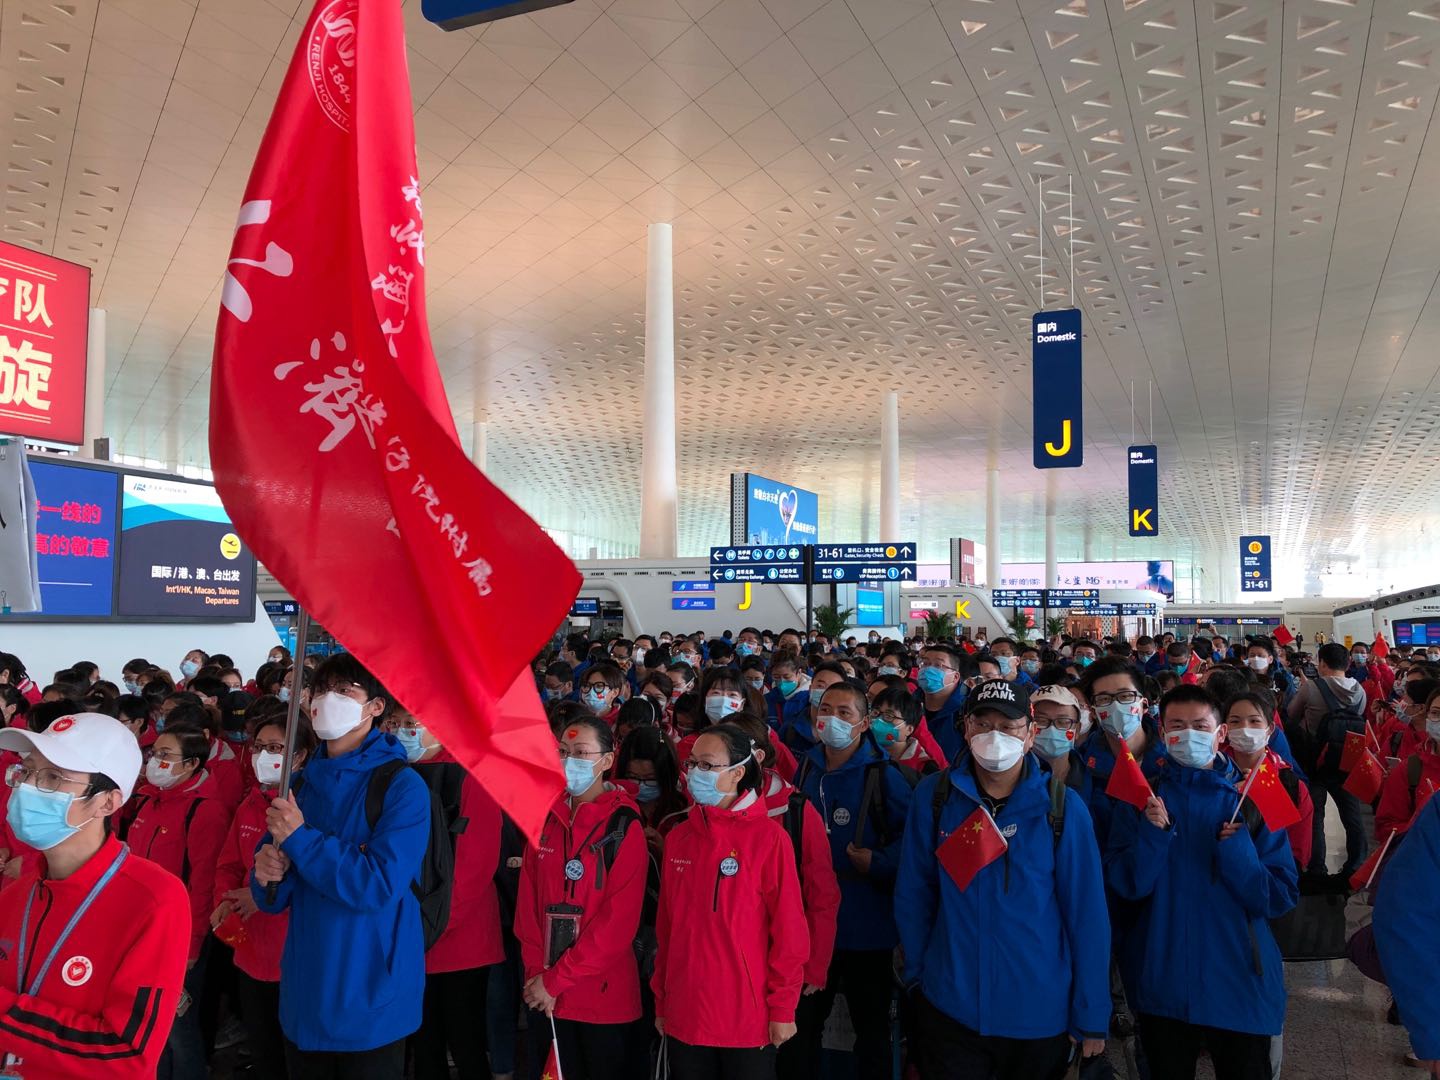 上海支援湖北医疗队员在武汉天河机场，准备出发。仁济医院 供图